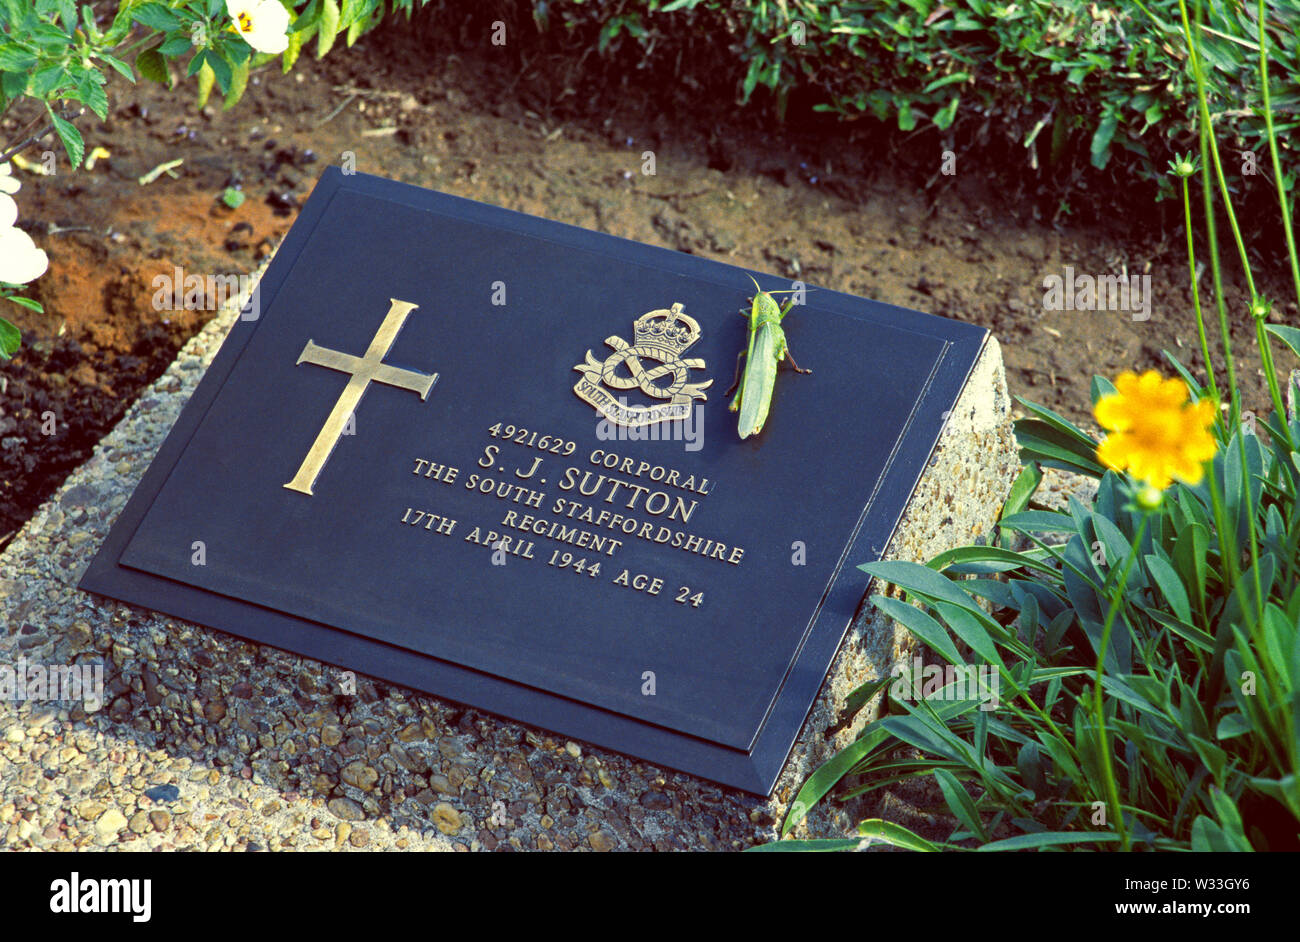 Taukkyan, myanmar - 23 décembre 2001 : la pierre tombale d'un soldat britannique à taukkyan war memorial Banque D'Images